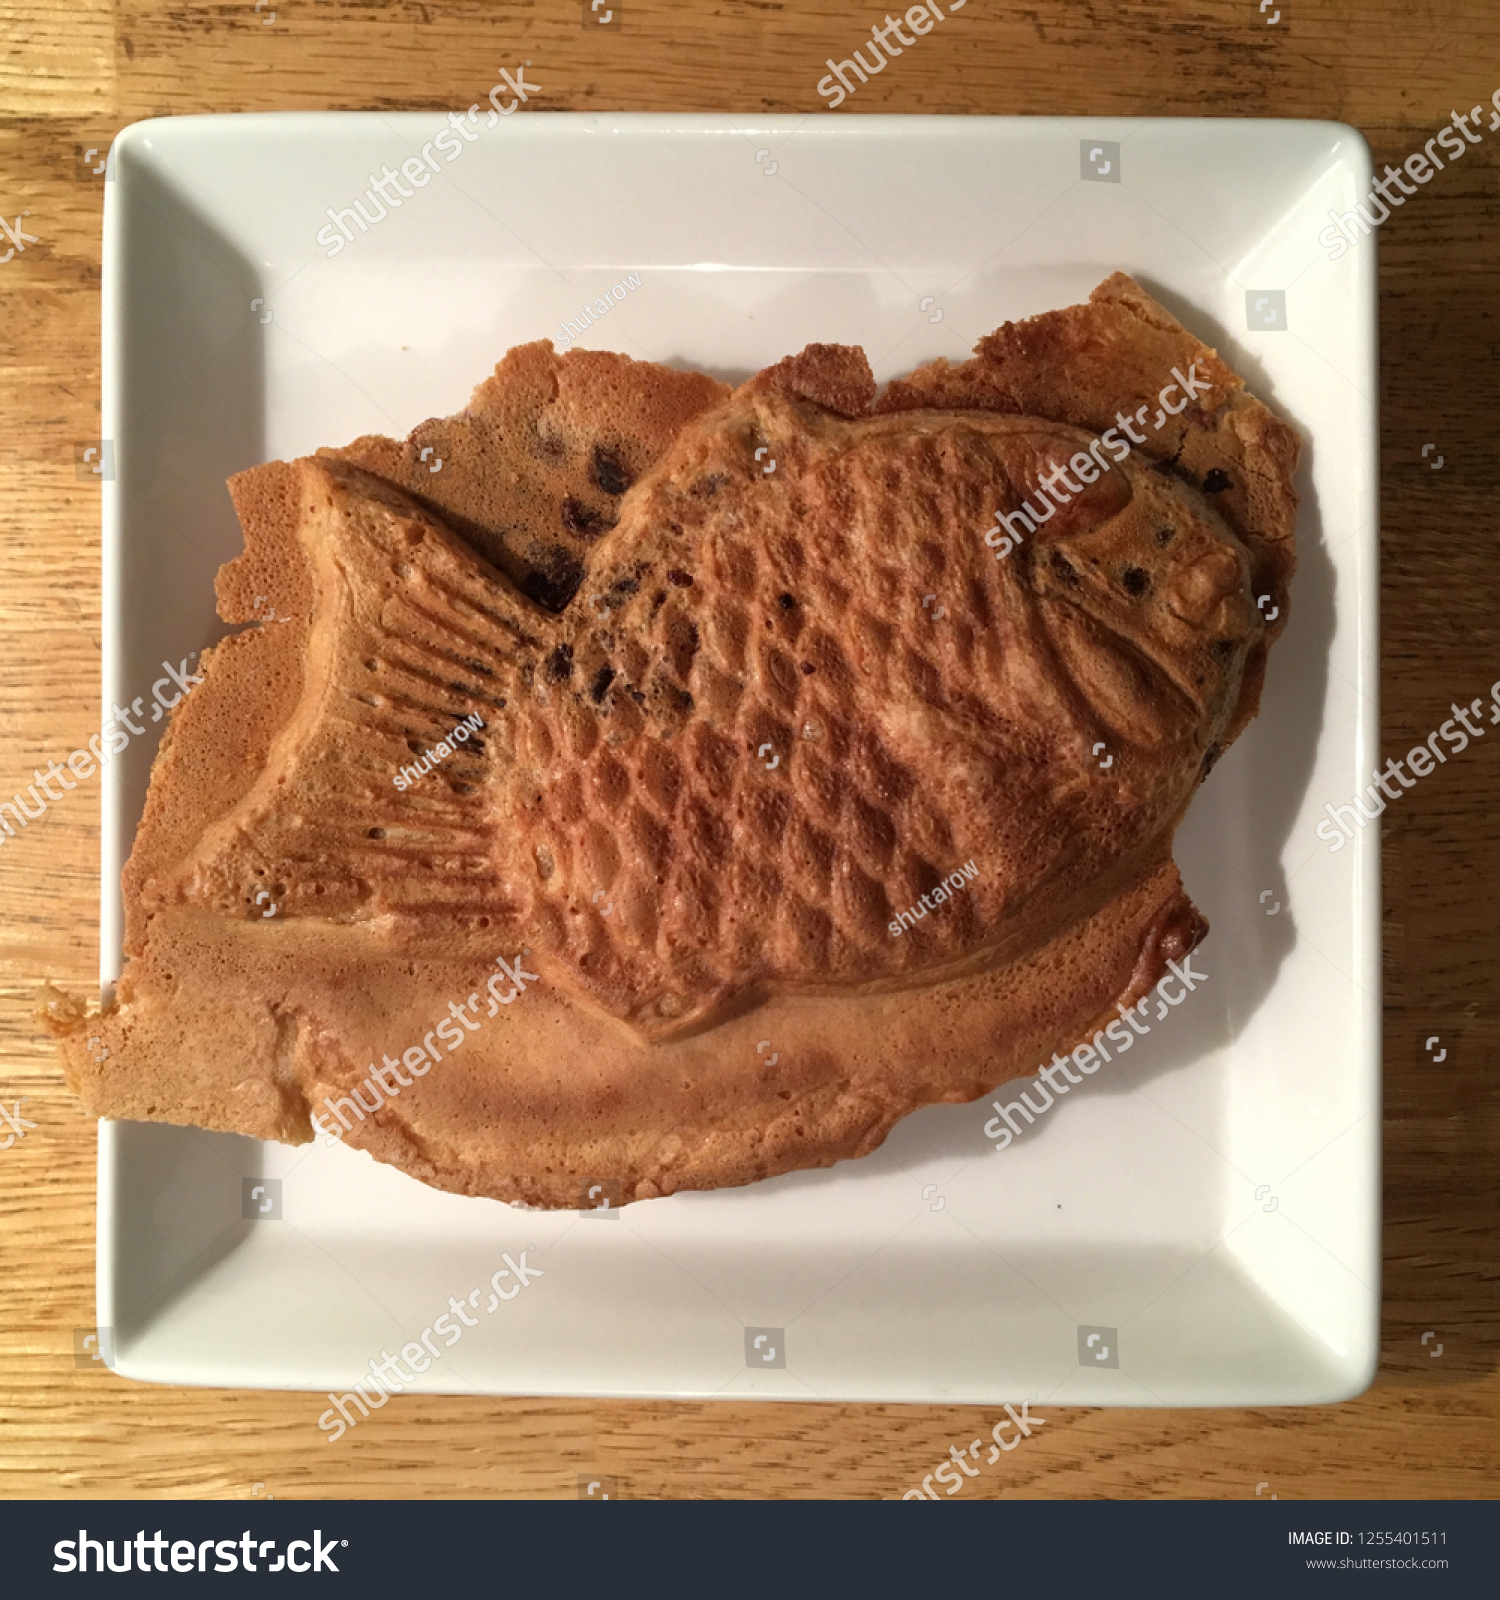 fish shaped pancake #1255401511